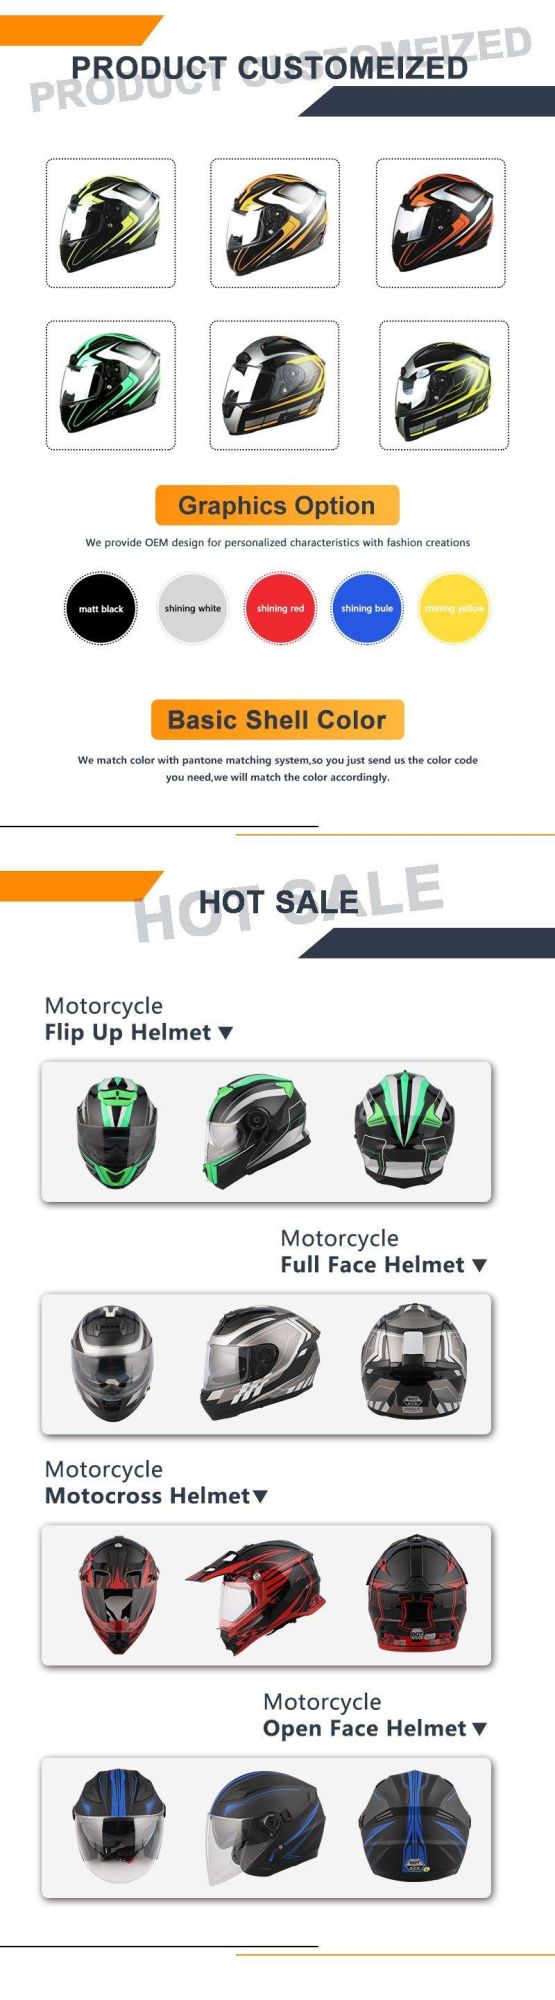 Buy Full Face Road Helmets Online Motorcycle Safest Helmet